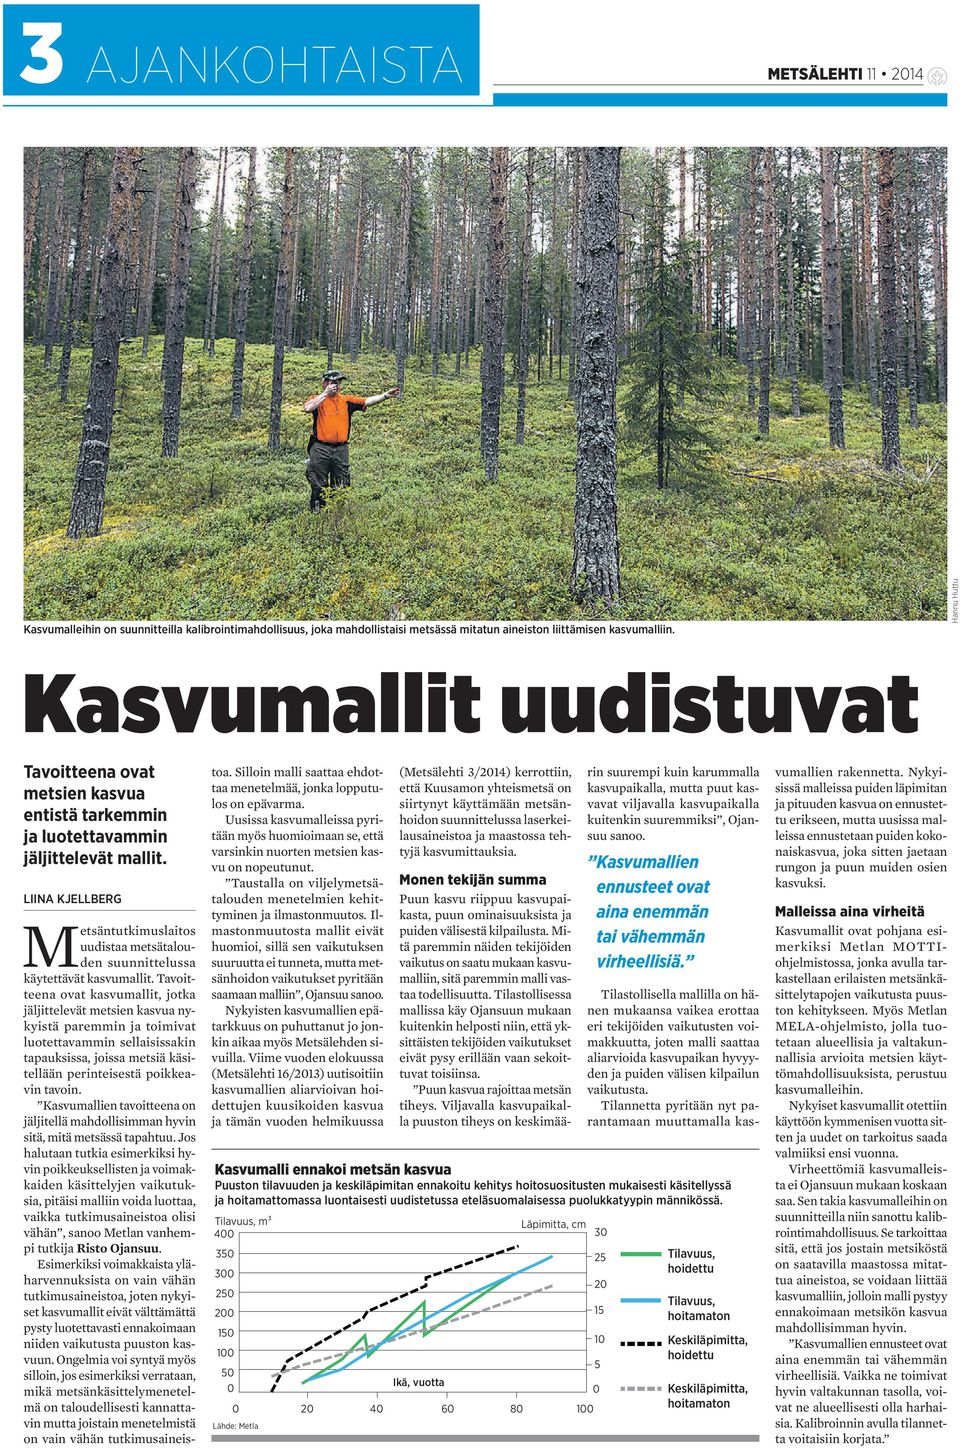 LIINA KJELLBERG Metsäntutkimuslaitos uudistaa metsätalouden suunnittelussa käytettävät kasvumallit.